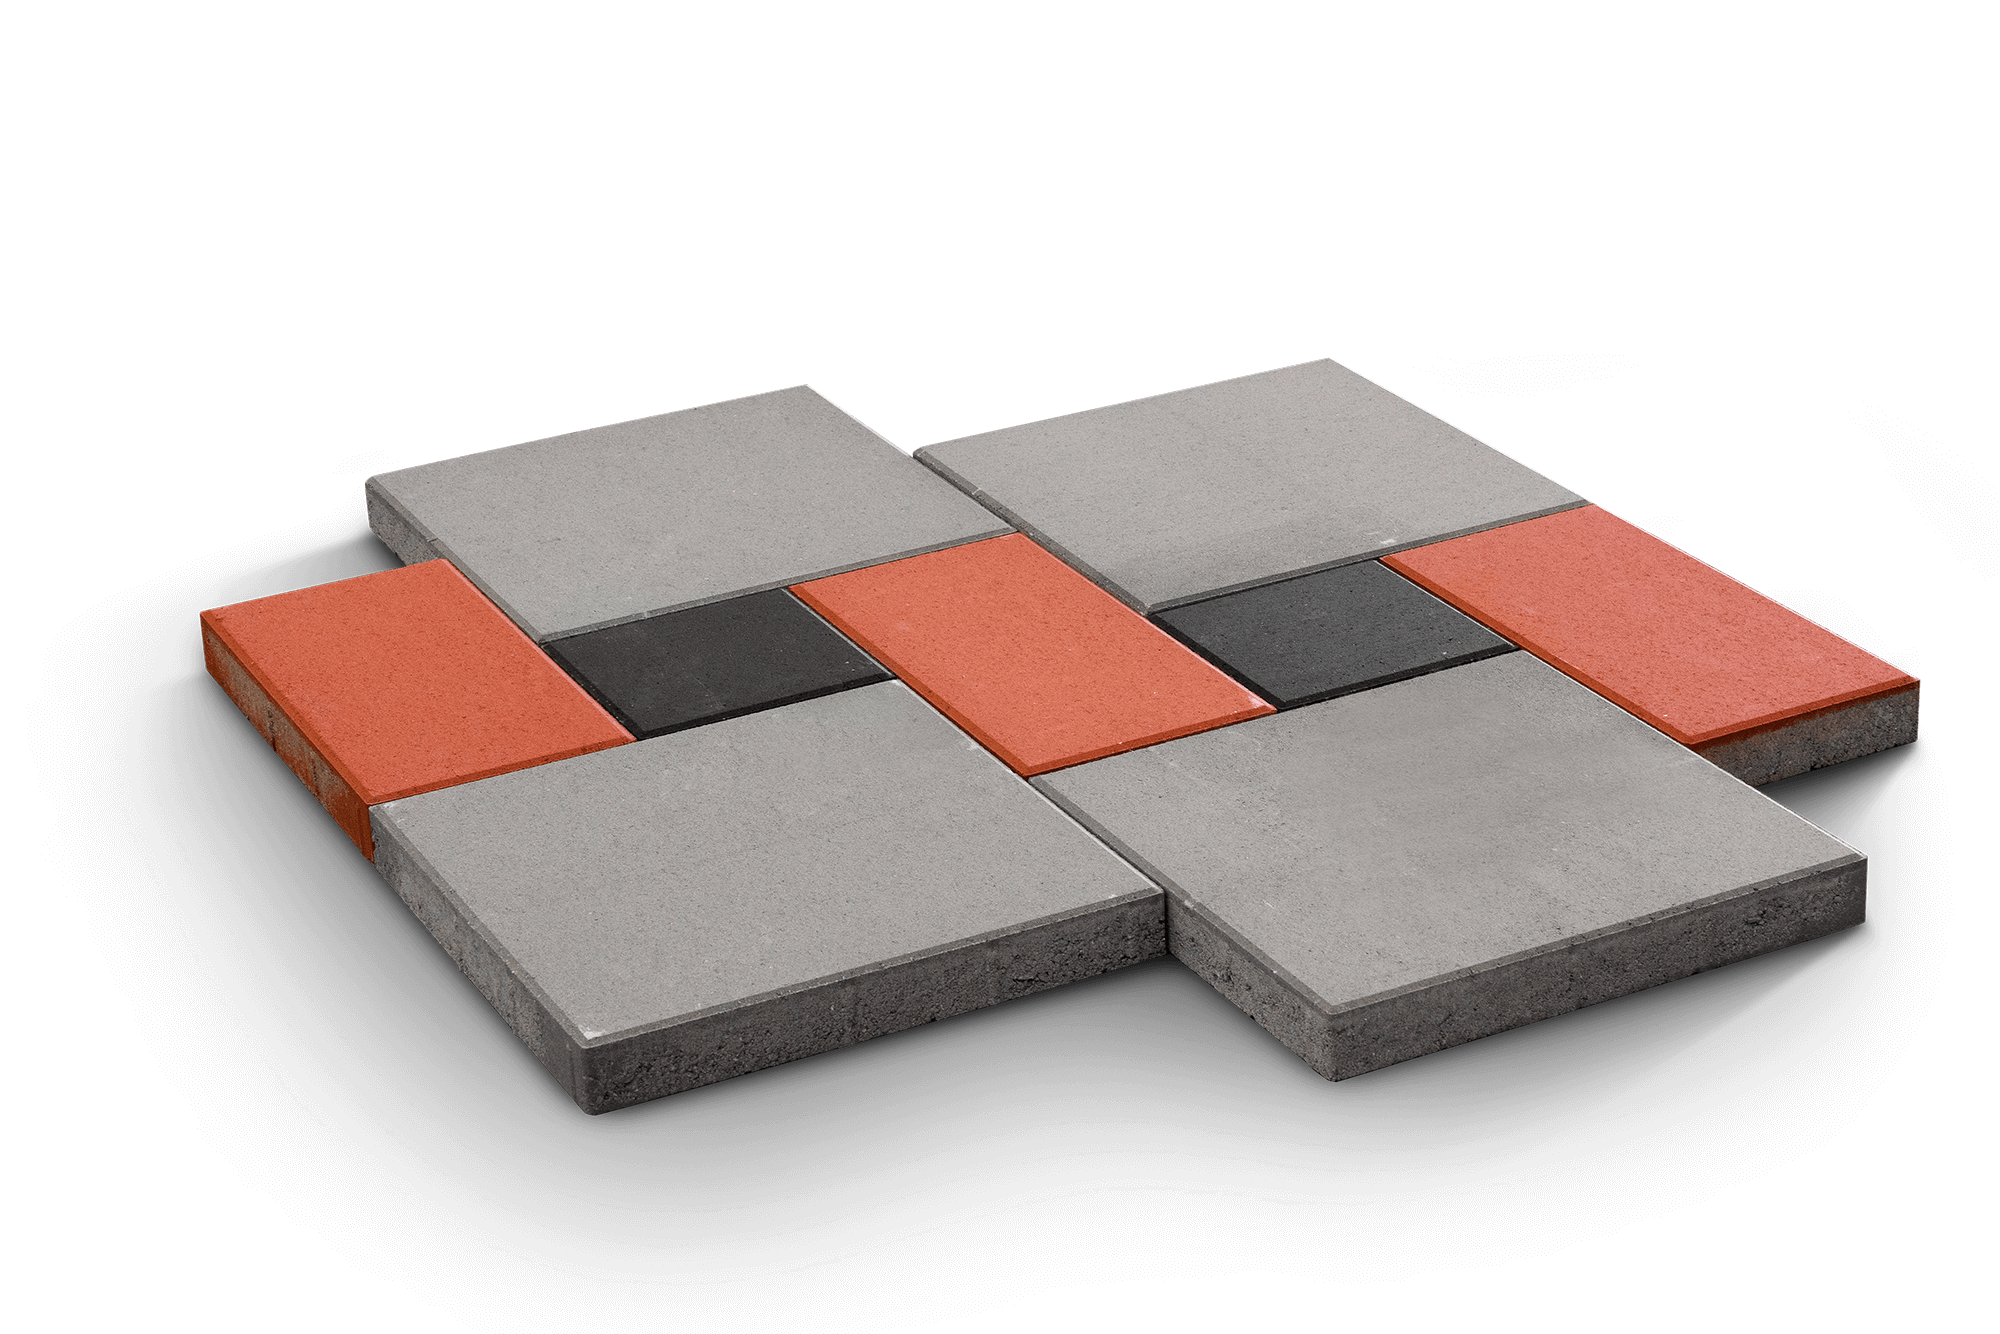 formati-e-modularita-pavimentazioni-siprem-nero-grigio-rosso-min